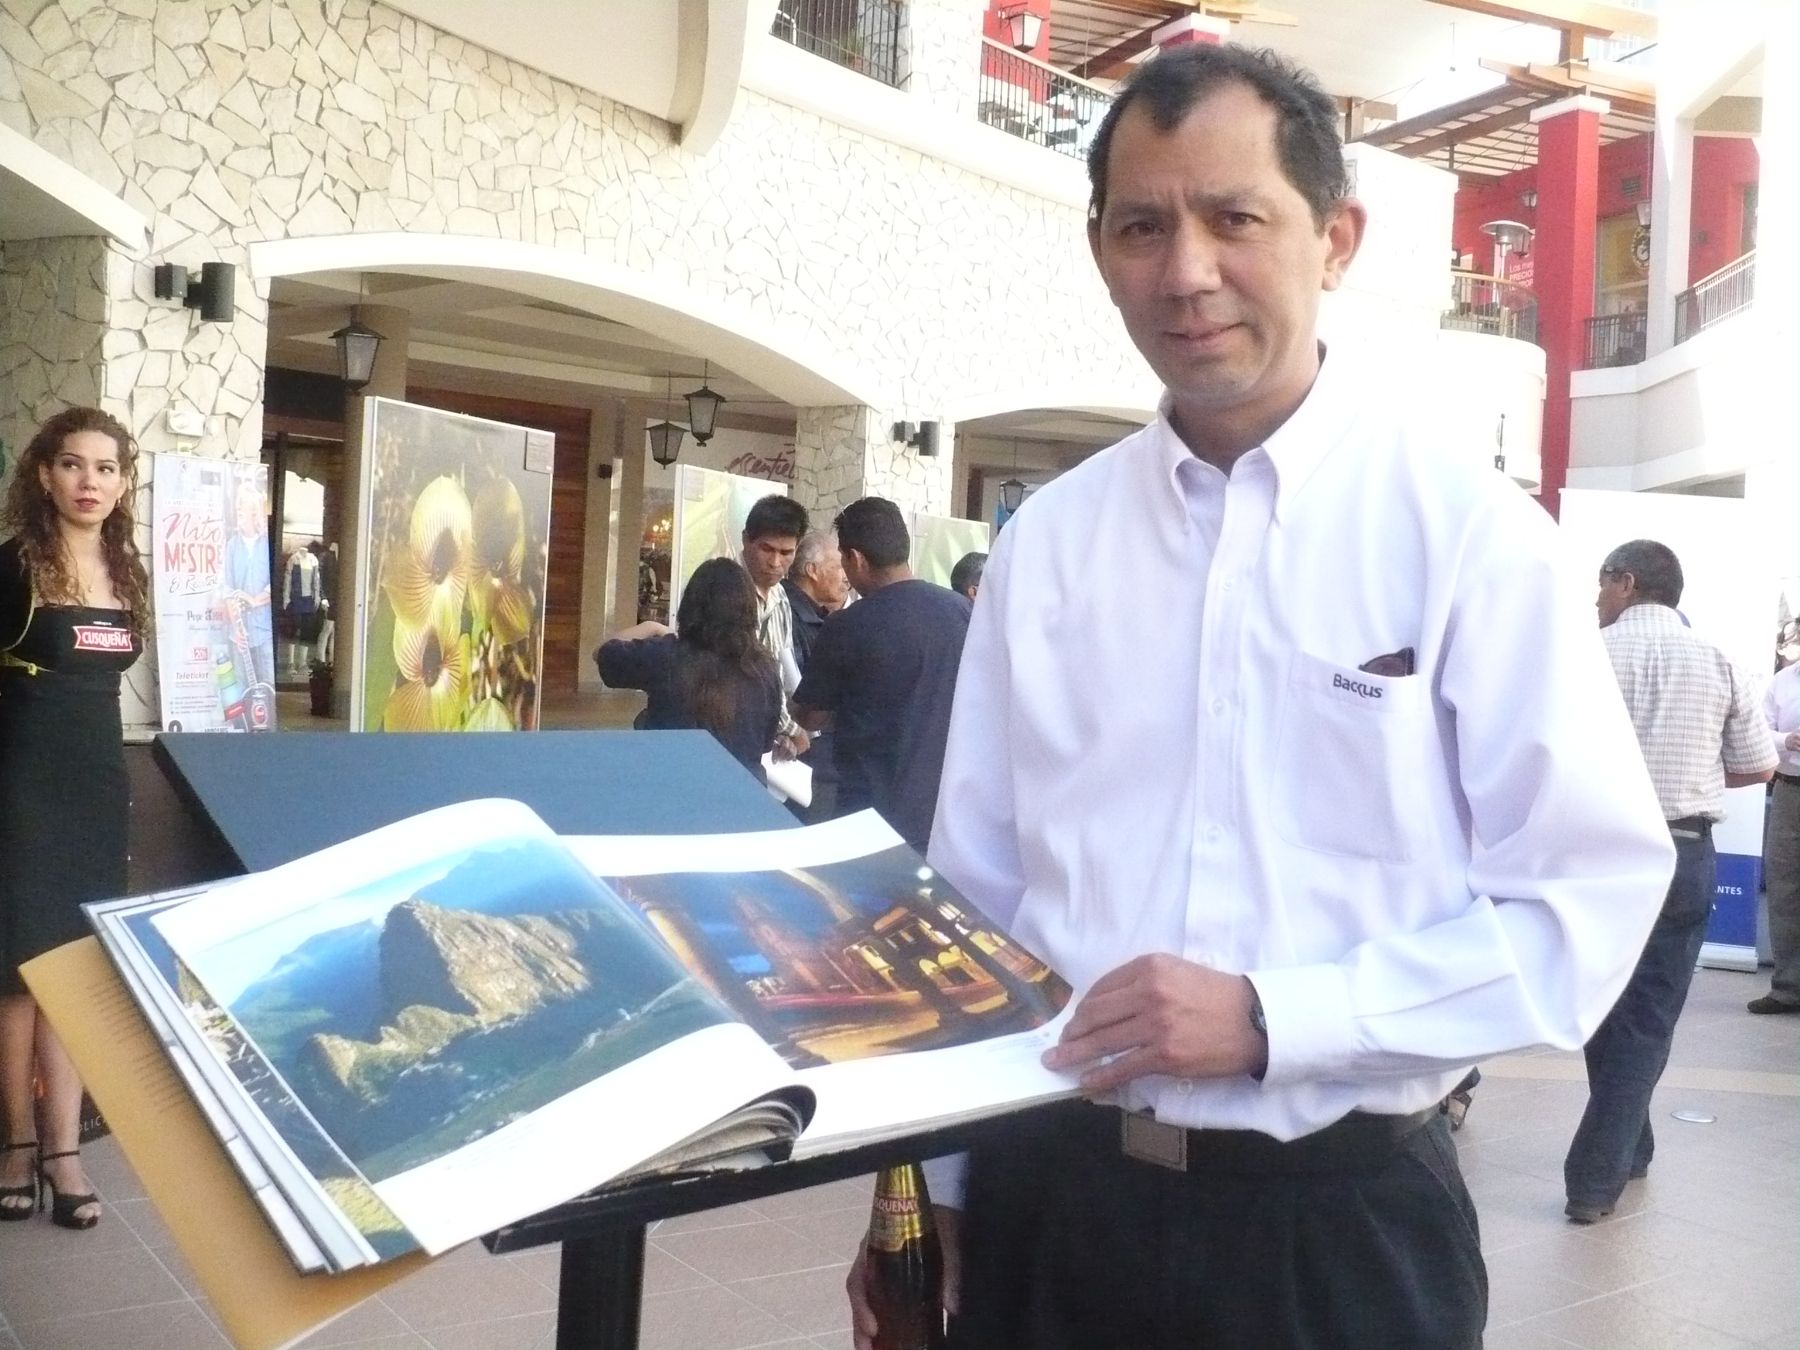 Libro Machu Picchu canto de piedra, el cual contiene más de 200 fotografías de la ciudadela incaica, fue presentado en Arequipa. Foto: ANDINA / Rocío Méndez.